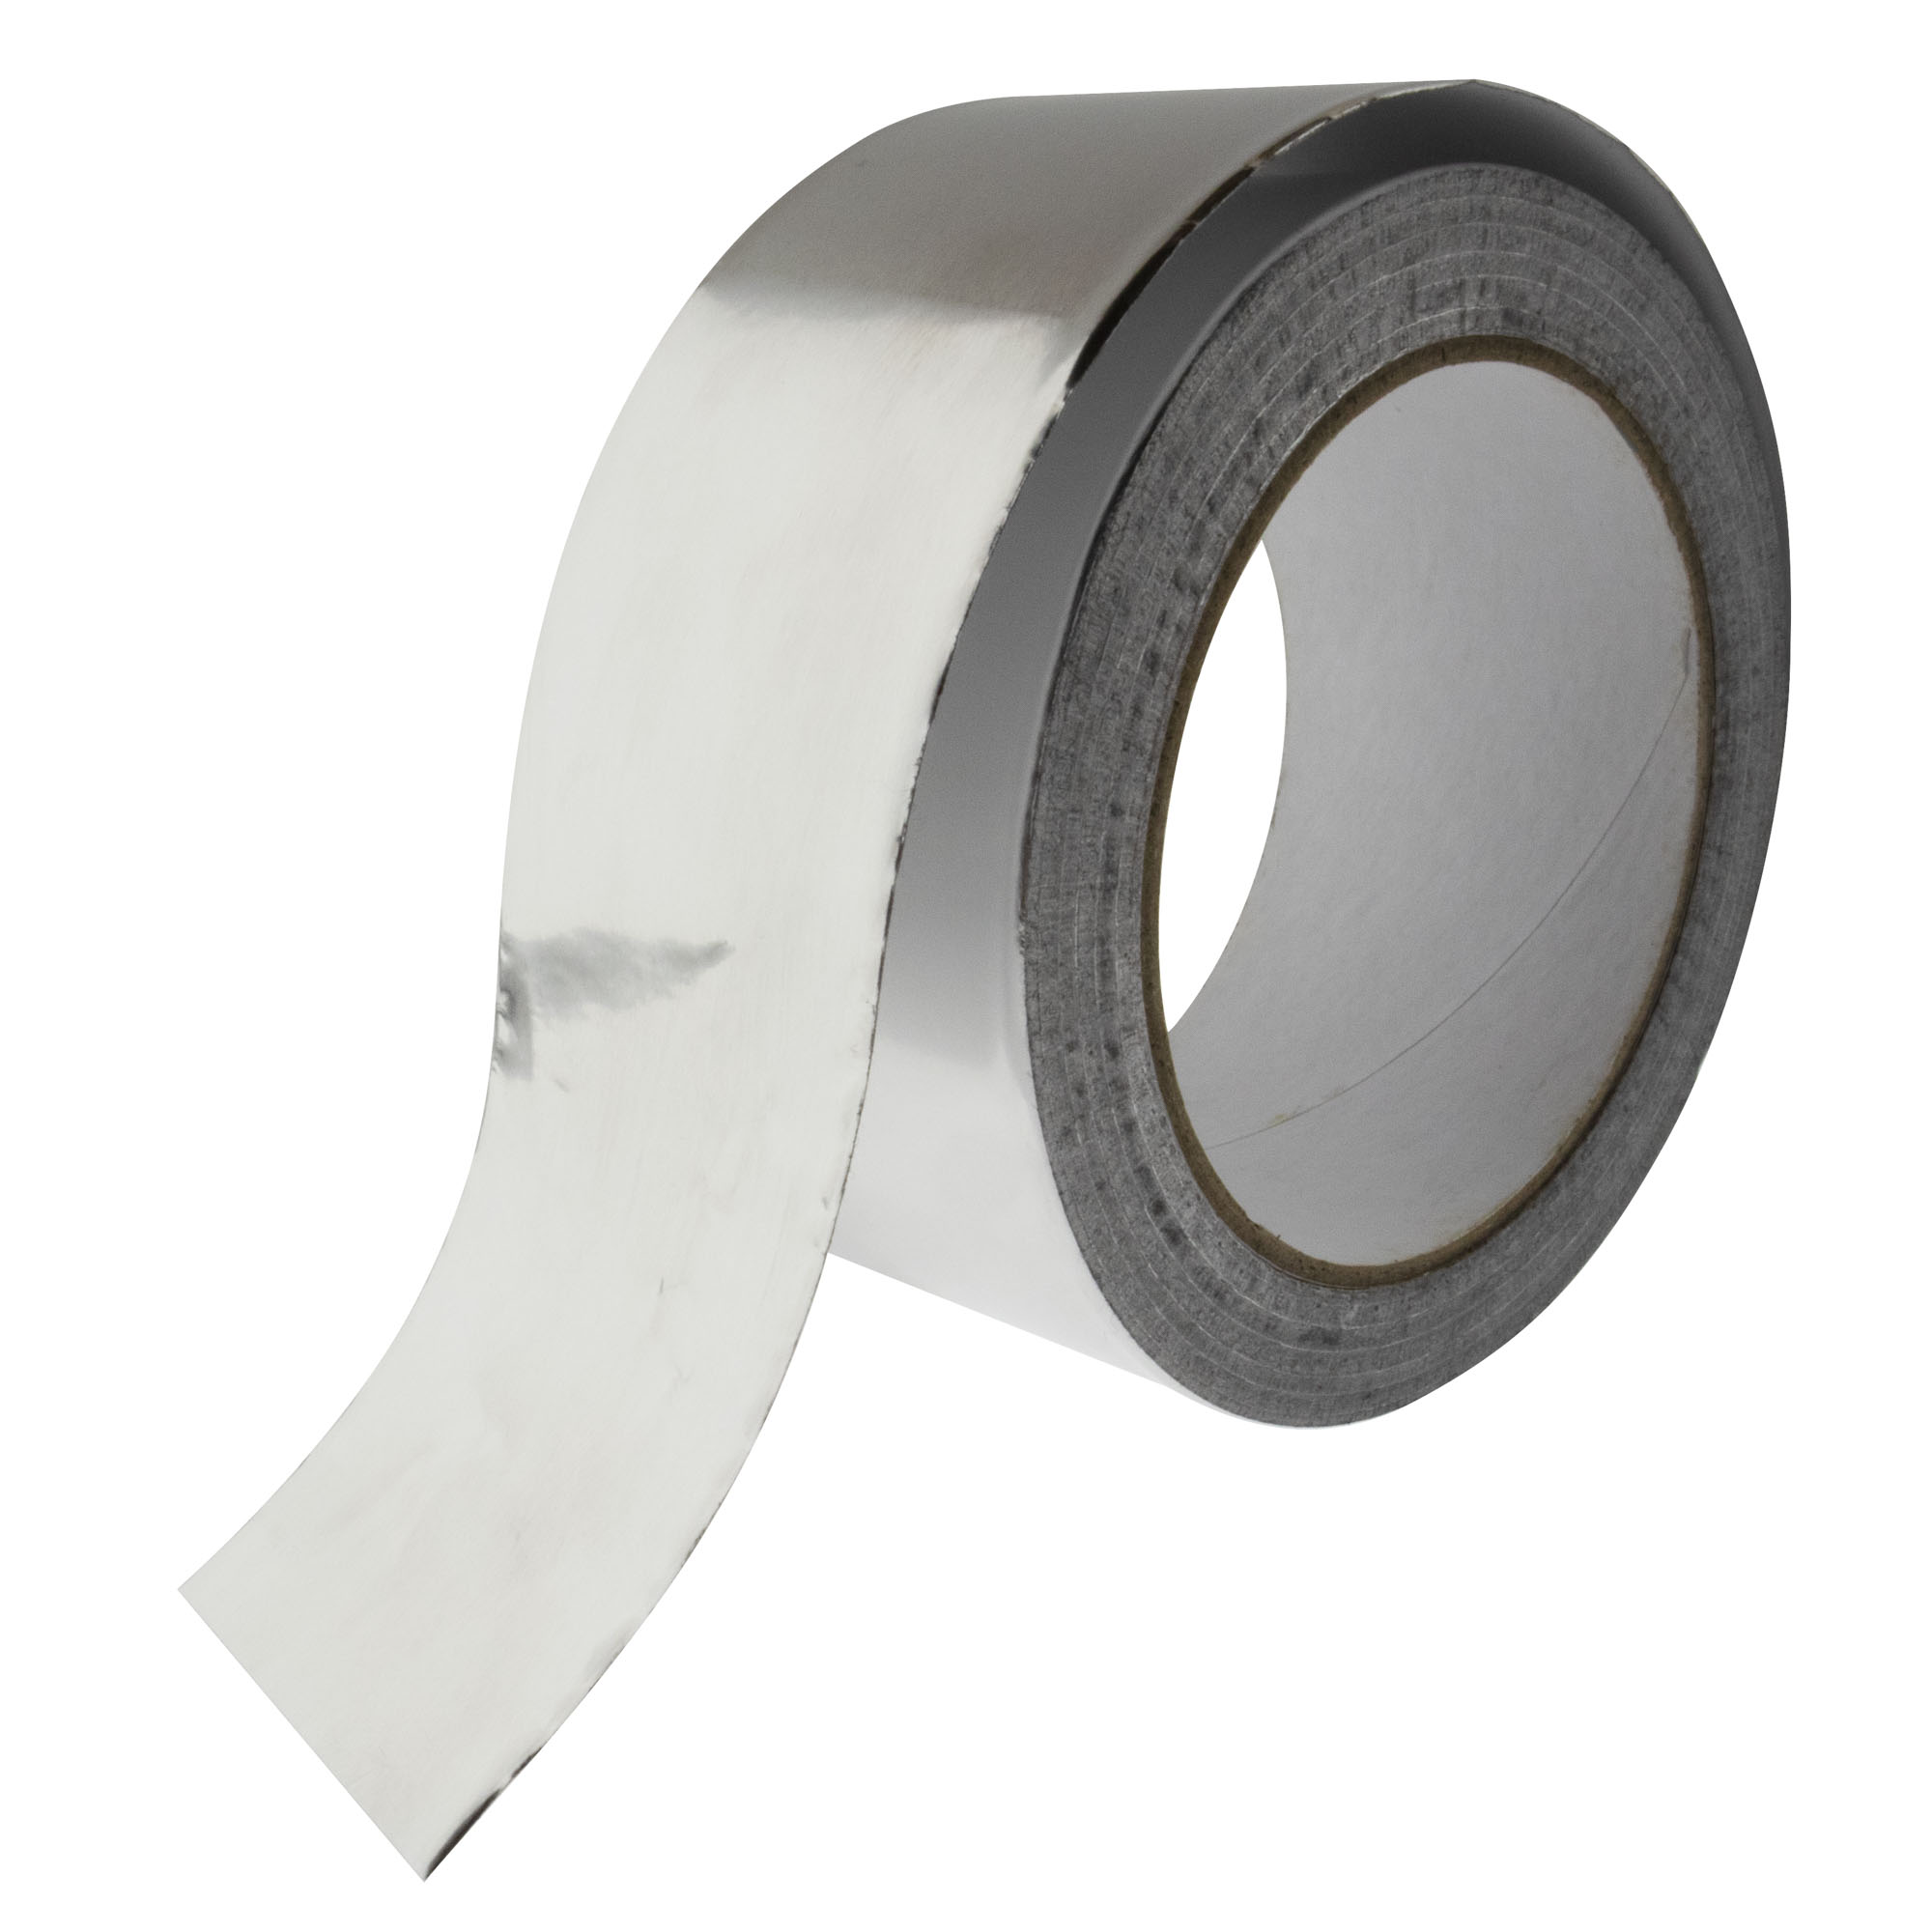 Aluminium foil tapes